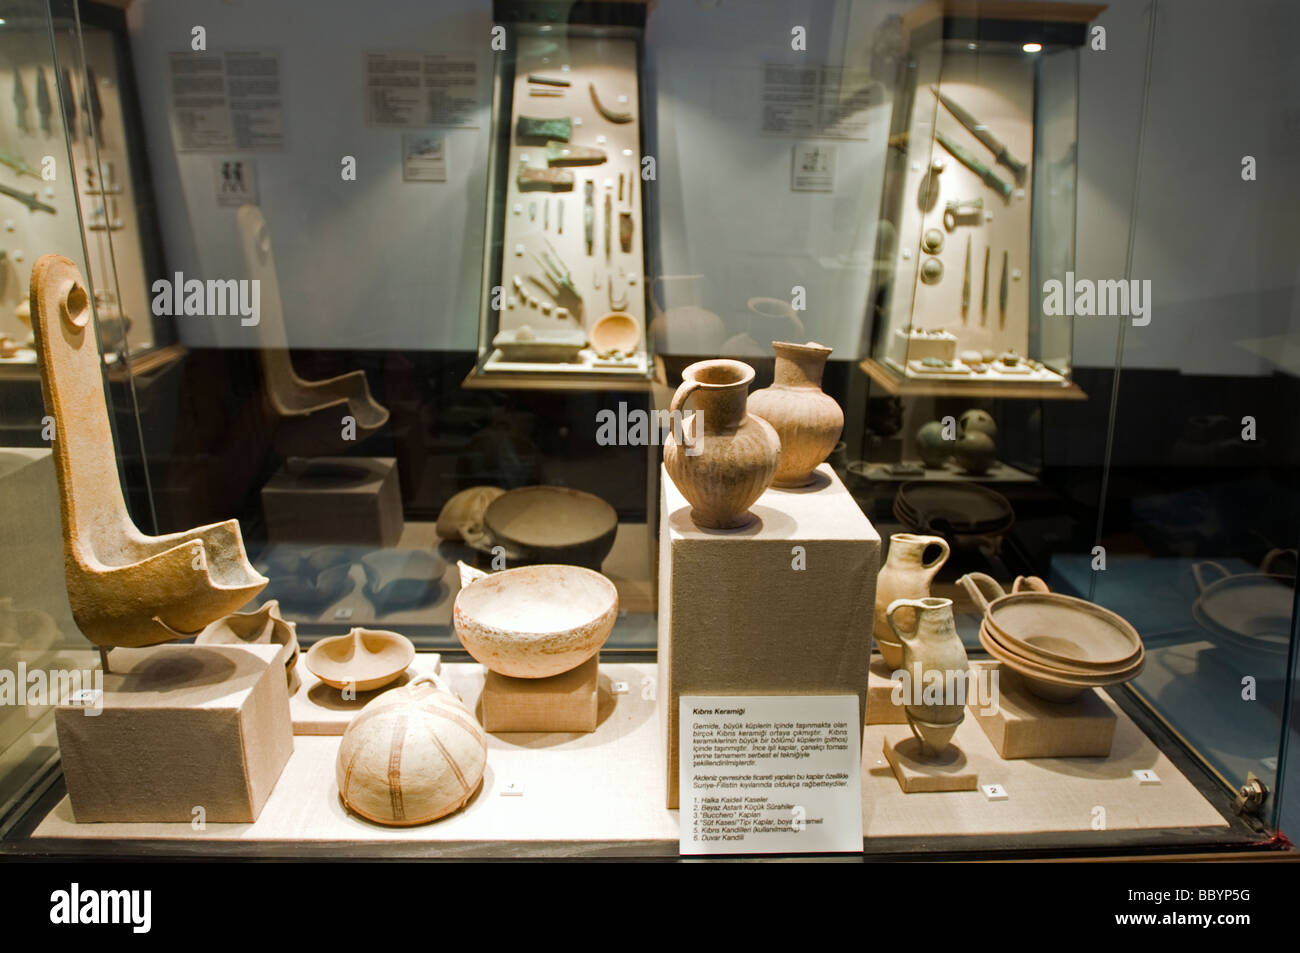 Chypre a trouvé de la céramique en Bronz Uluburun, épaves de l'époque plus ancienne épave jamais trouvé, Musée d'archéologie sous-marine de Bodrum Turquie Banque D'Images